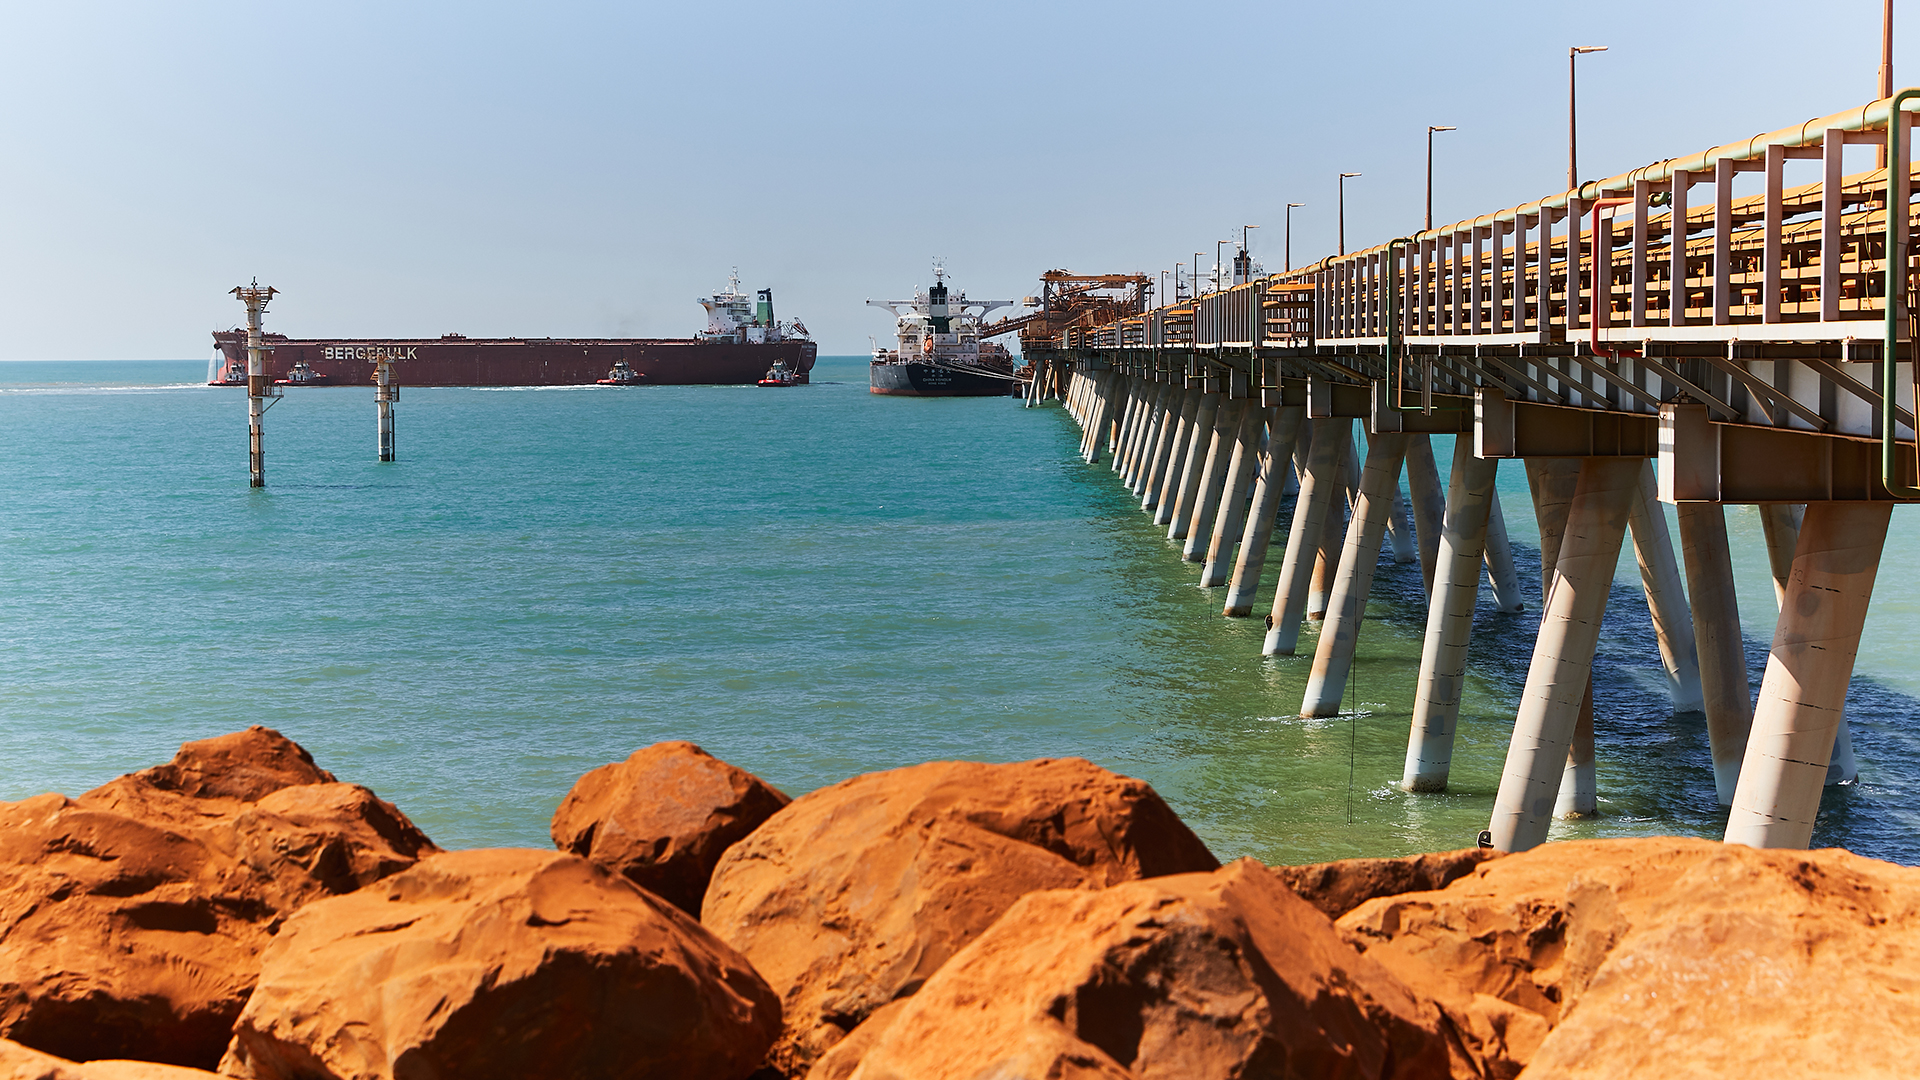 Cape Lambert port, Pilbara